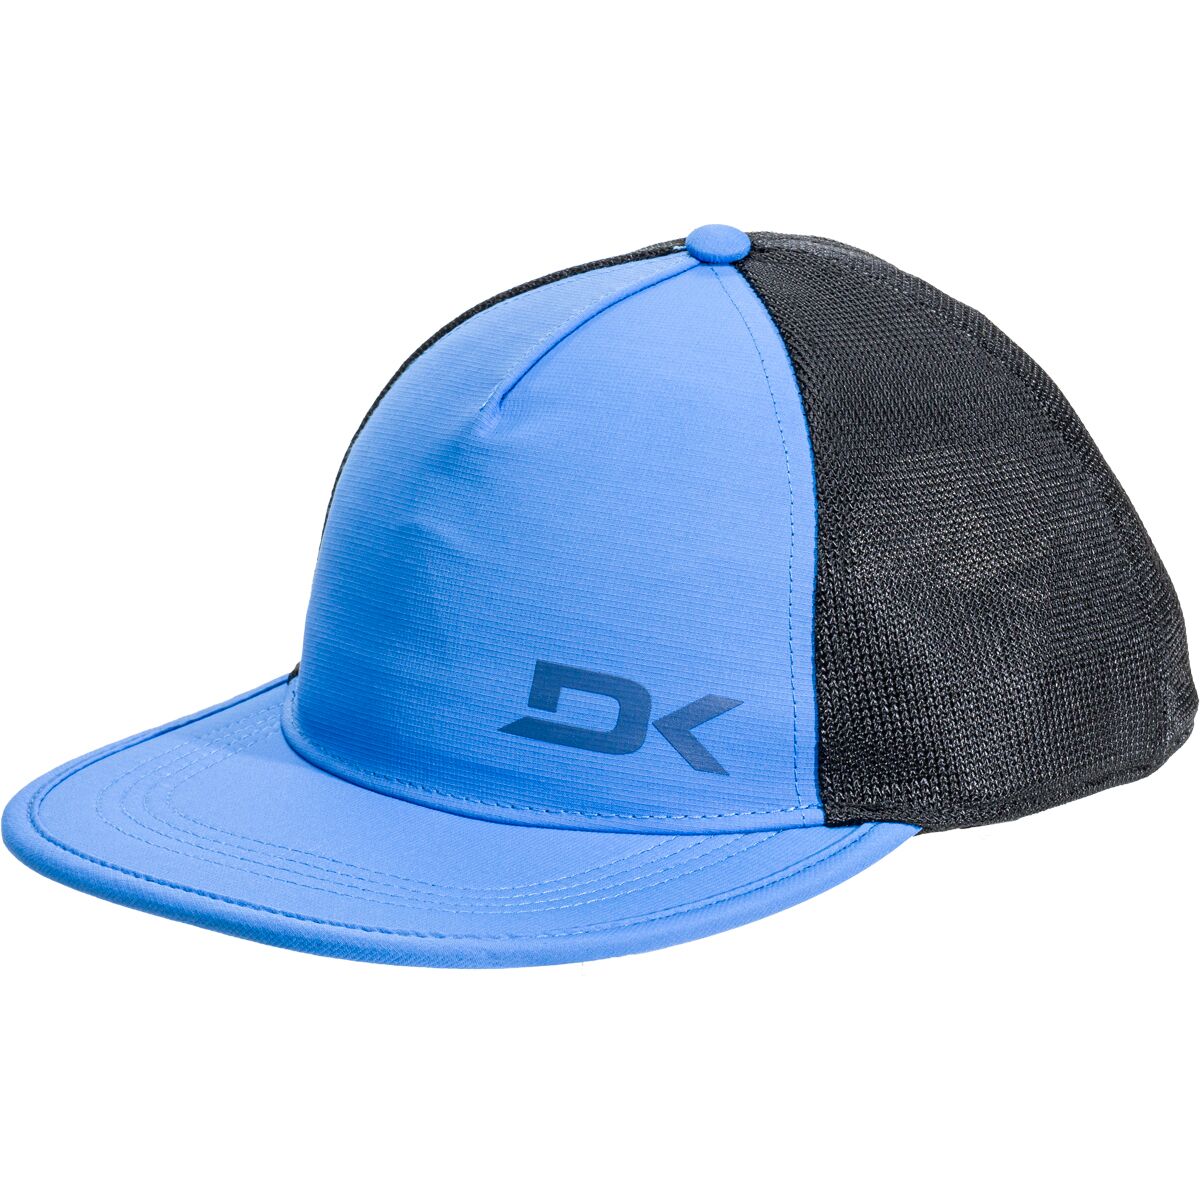 DAKINE Surf Trucker Hat